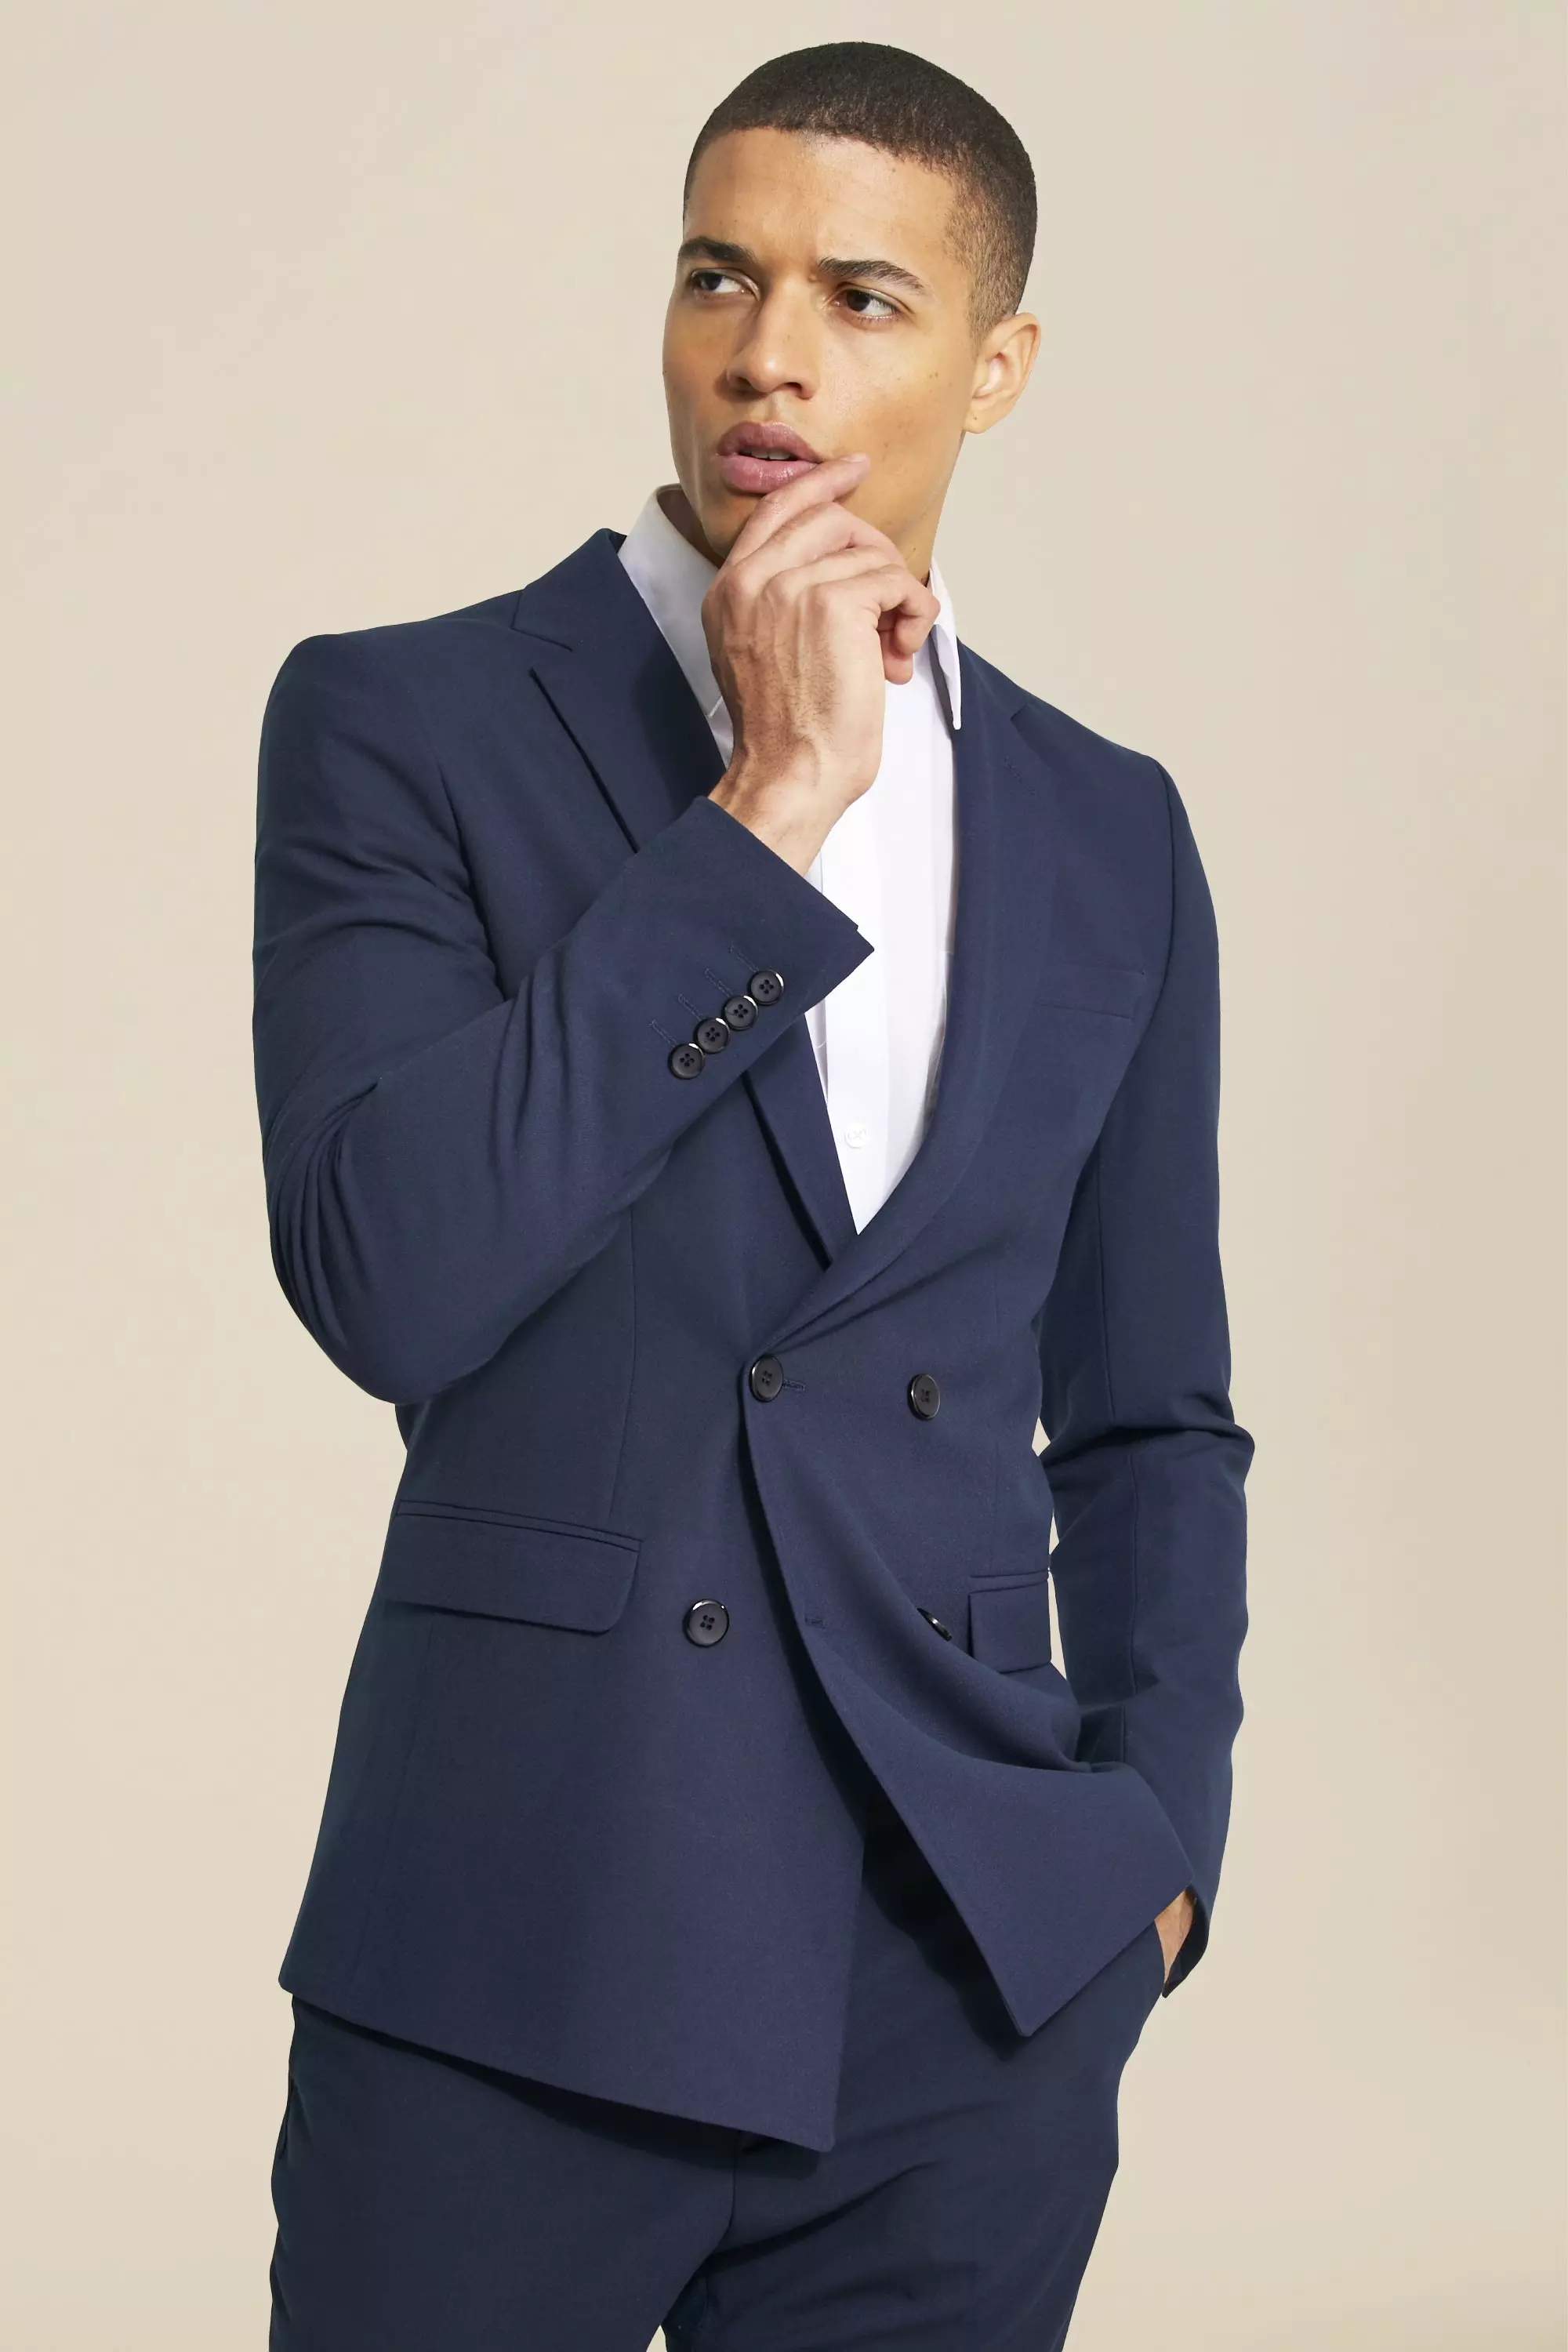 Men Double Breasted Jacket Navy Blue Slim Fit Elegant Formal -  Sweden